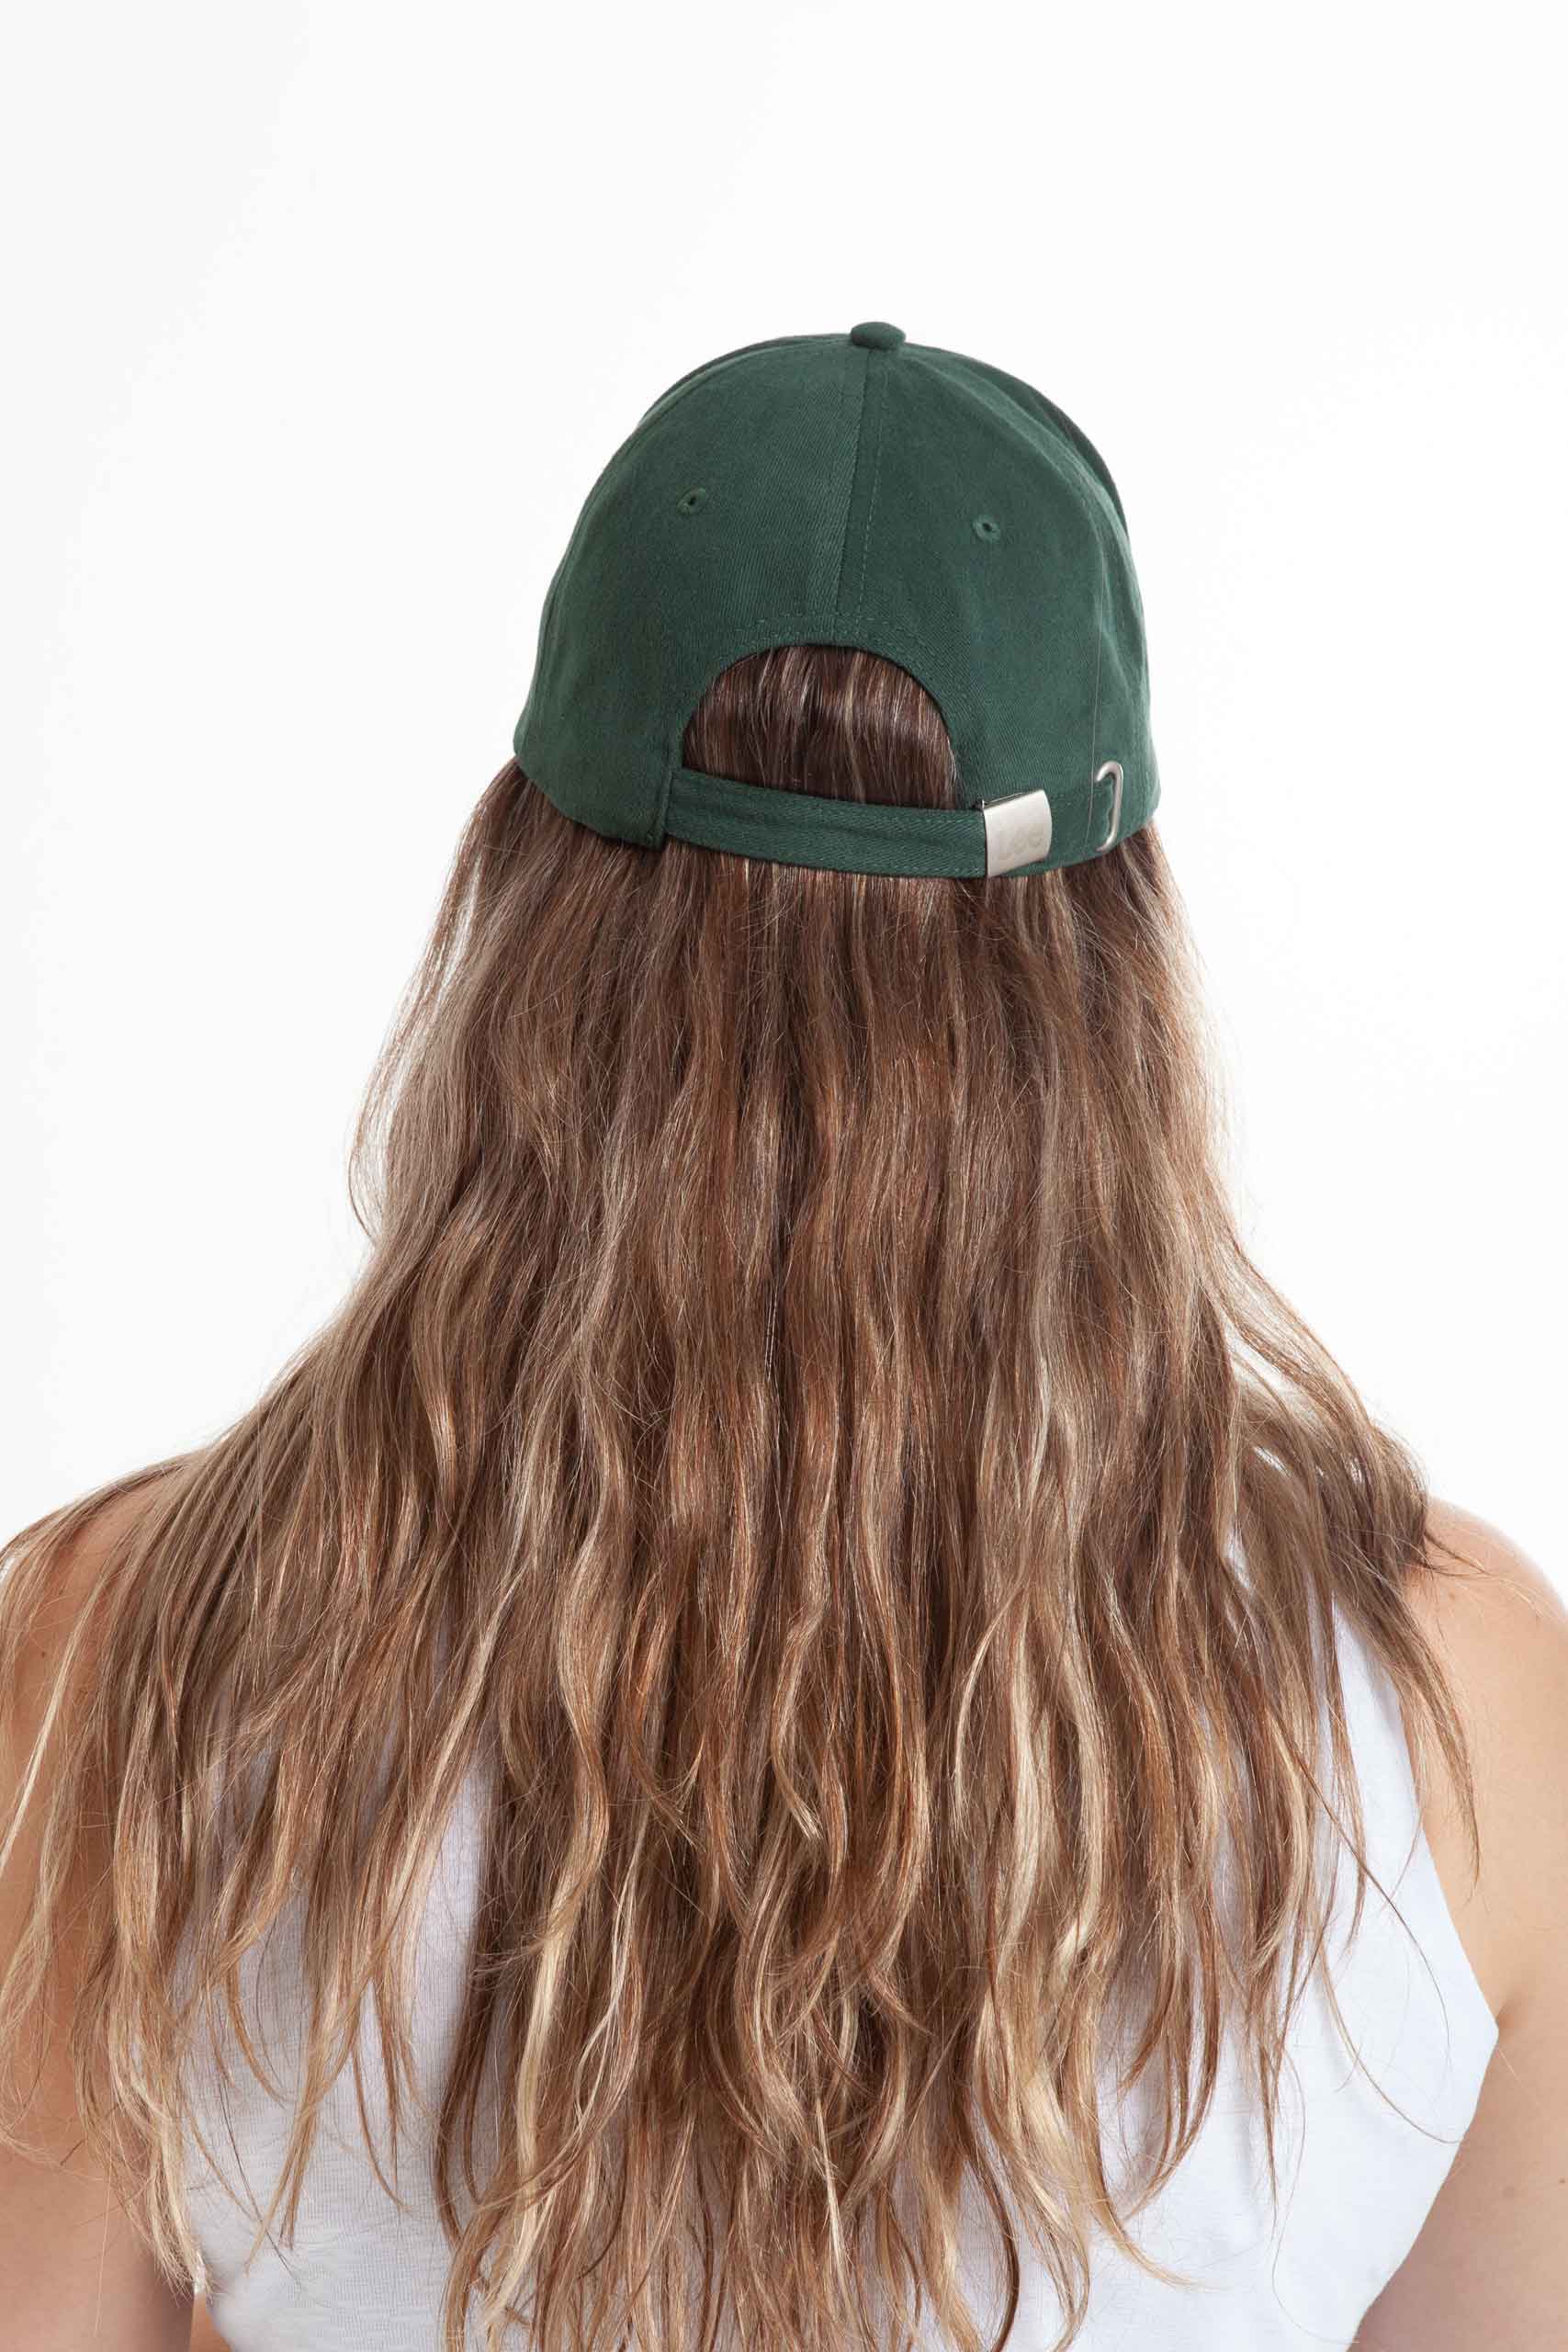 Vista posterior de gorra de color verde de marca lee